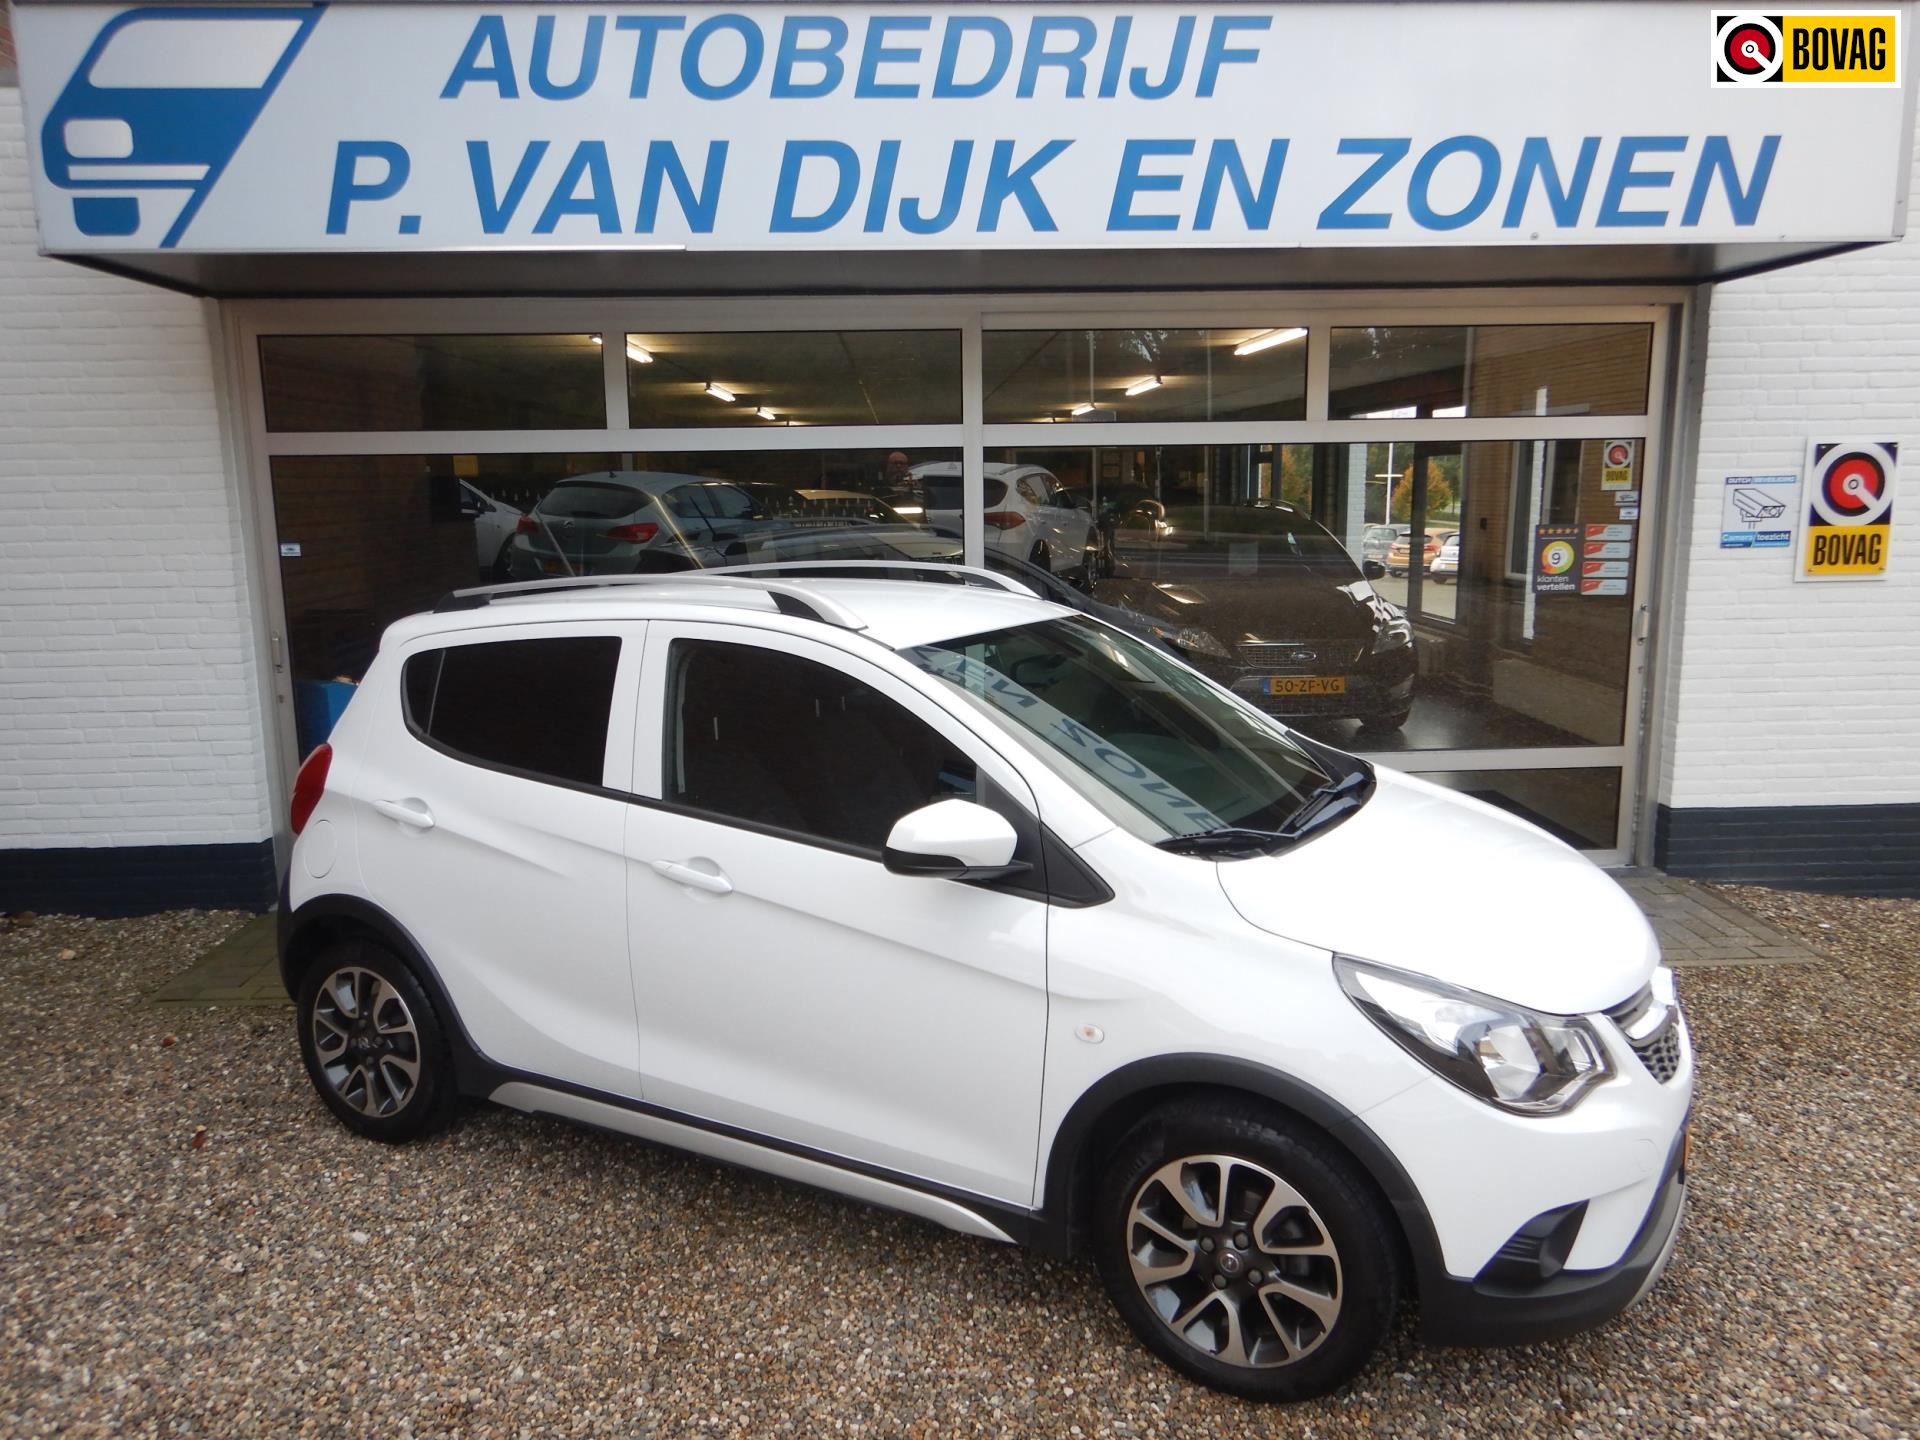 Opel KARL occasion - Autobedrijf P. van Dijk en Zonen